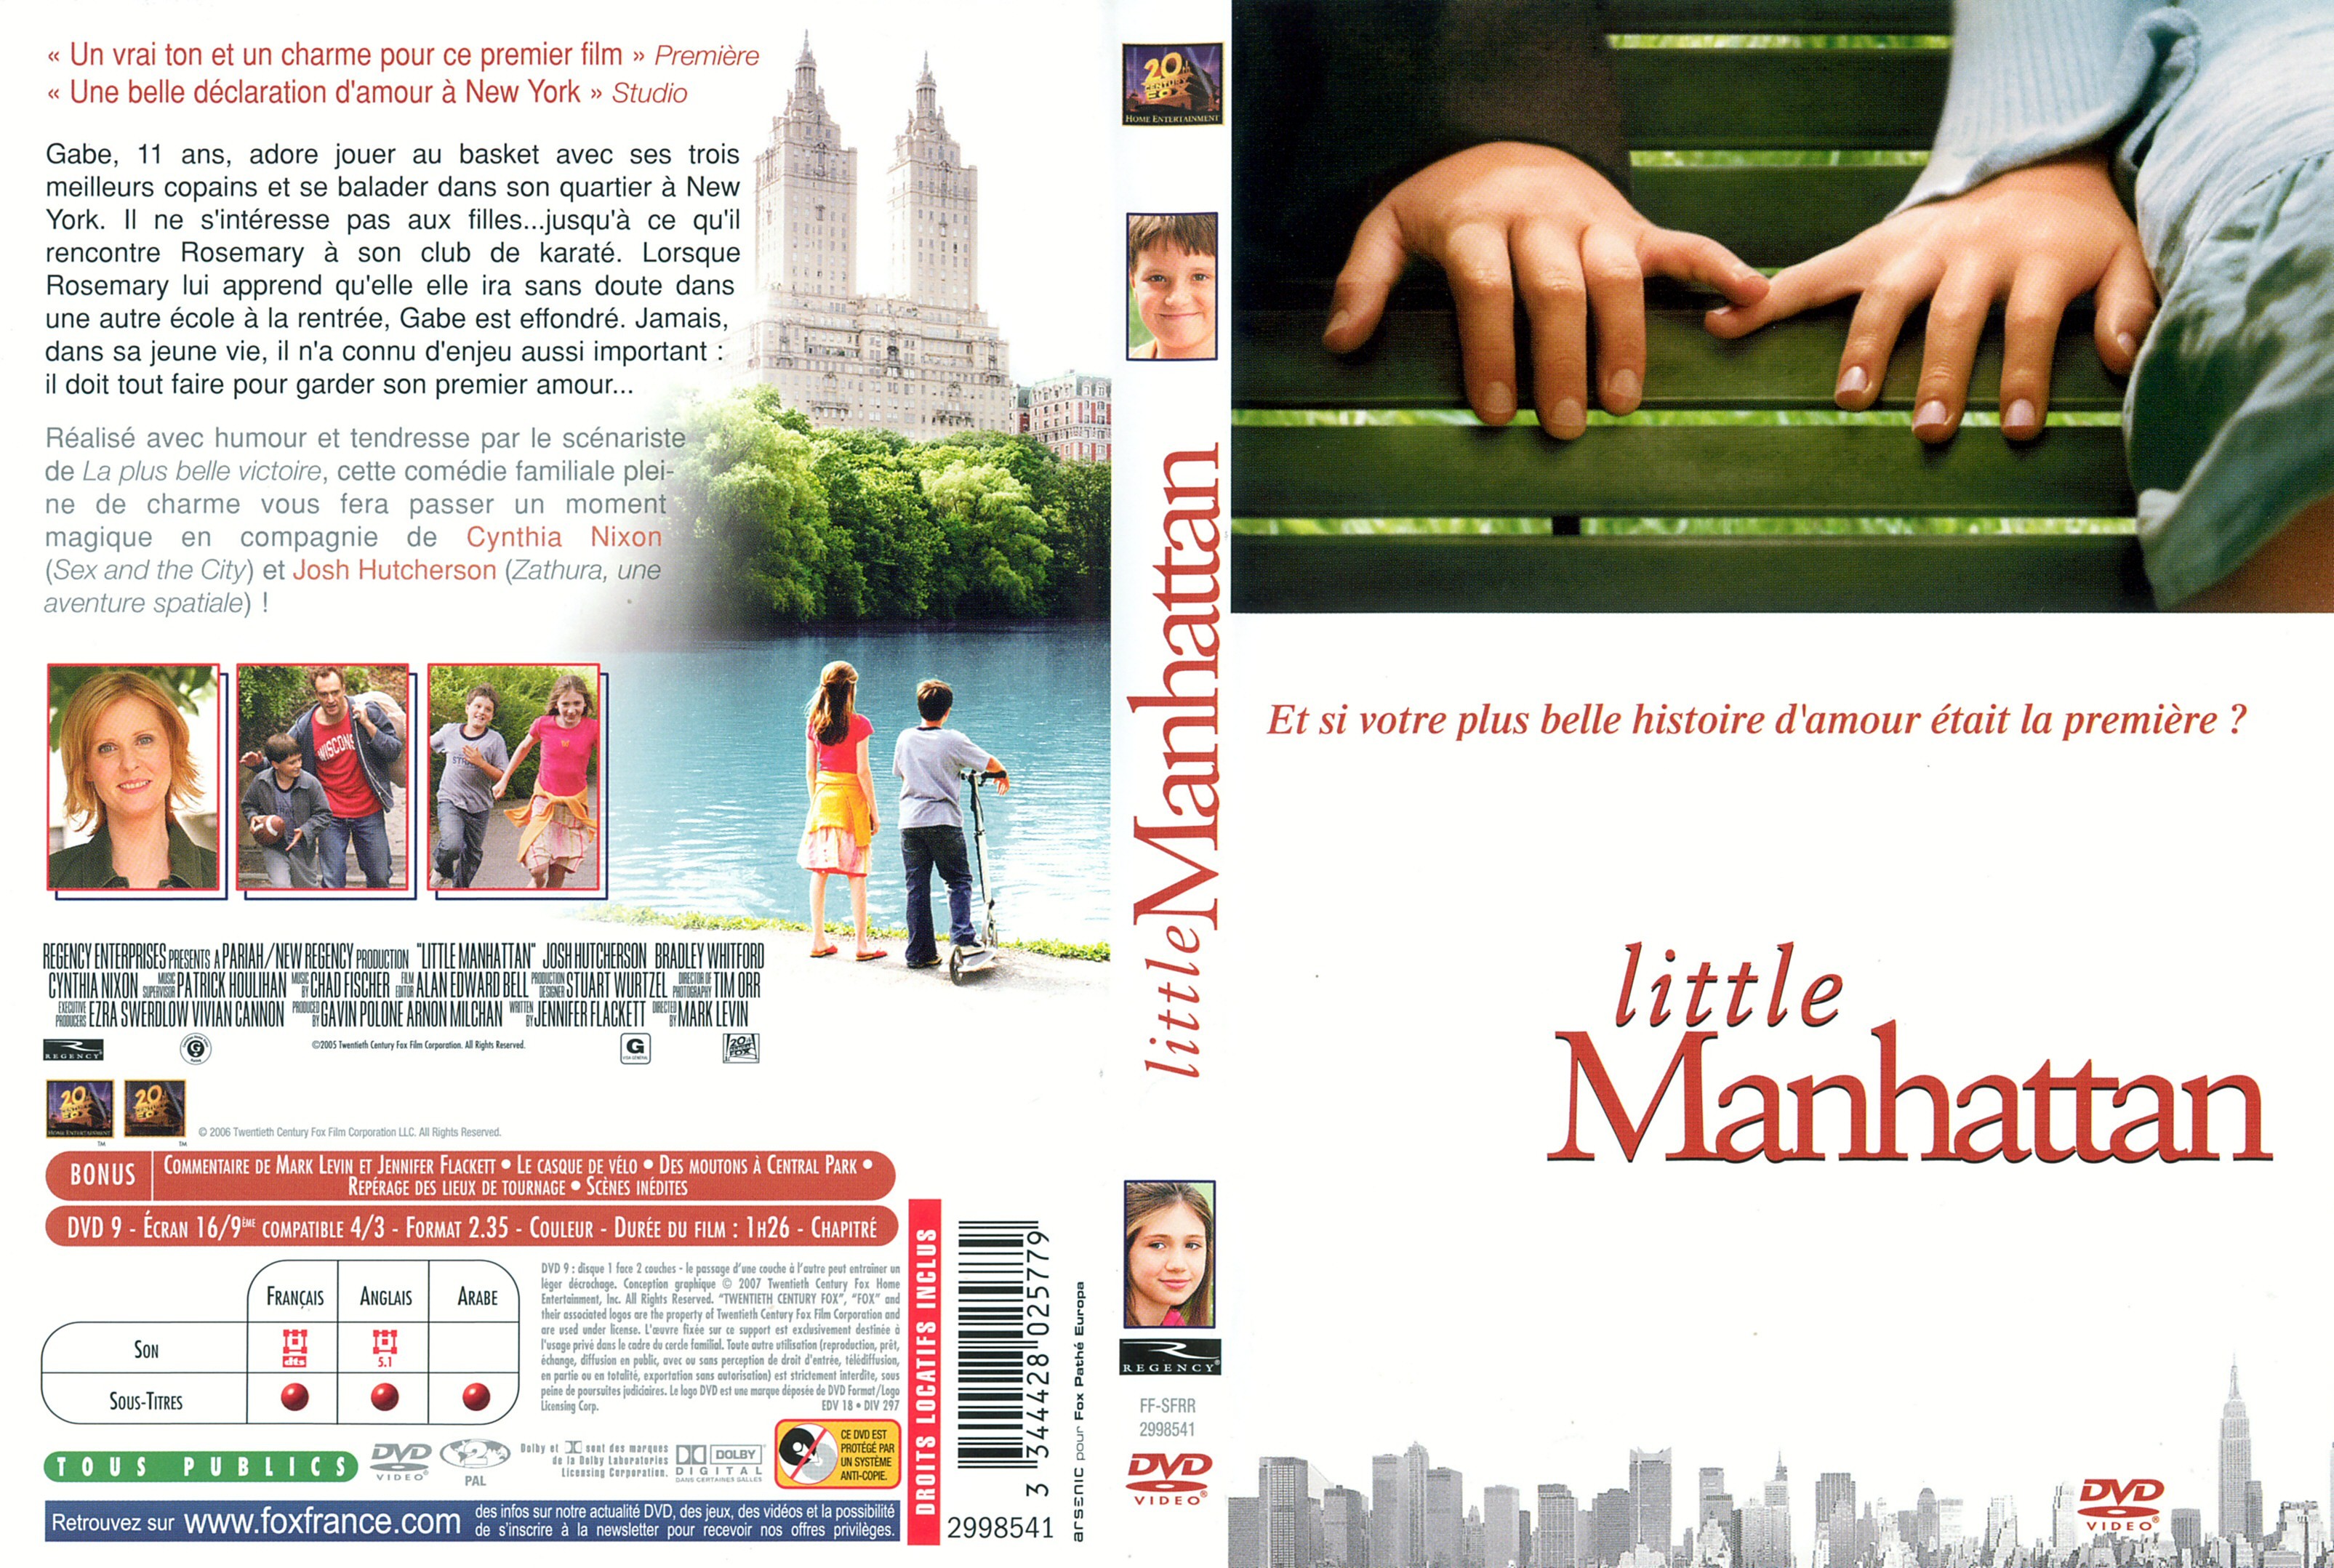 Jaquette DVD Little Manhattan